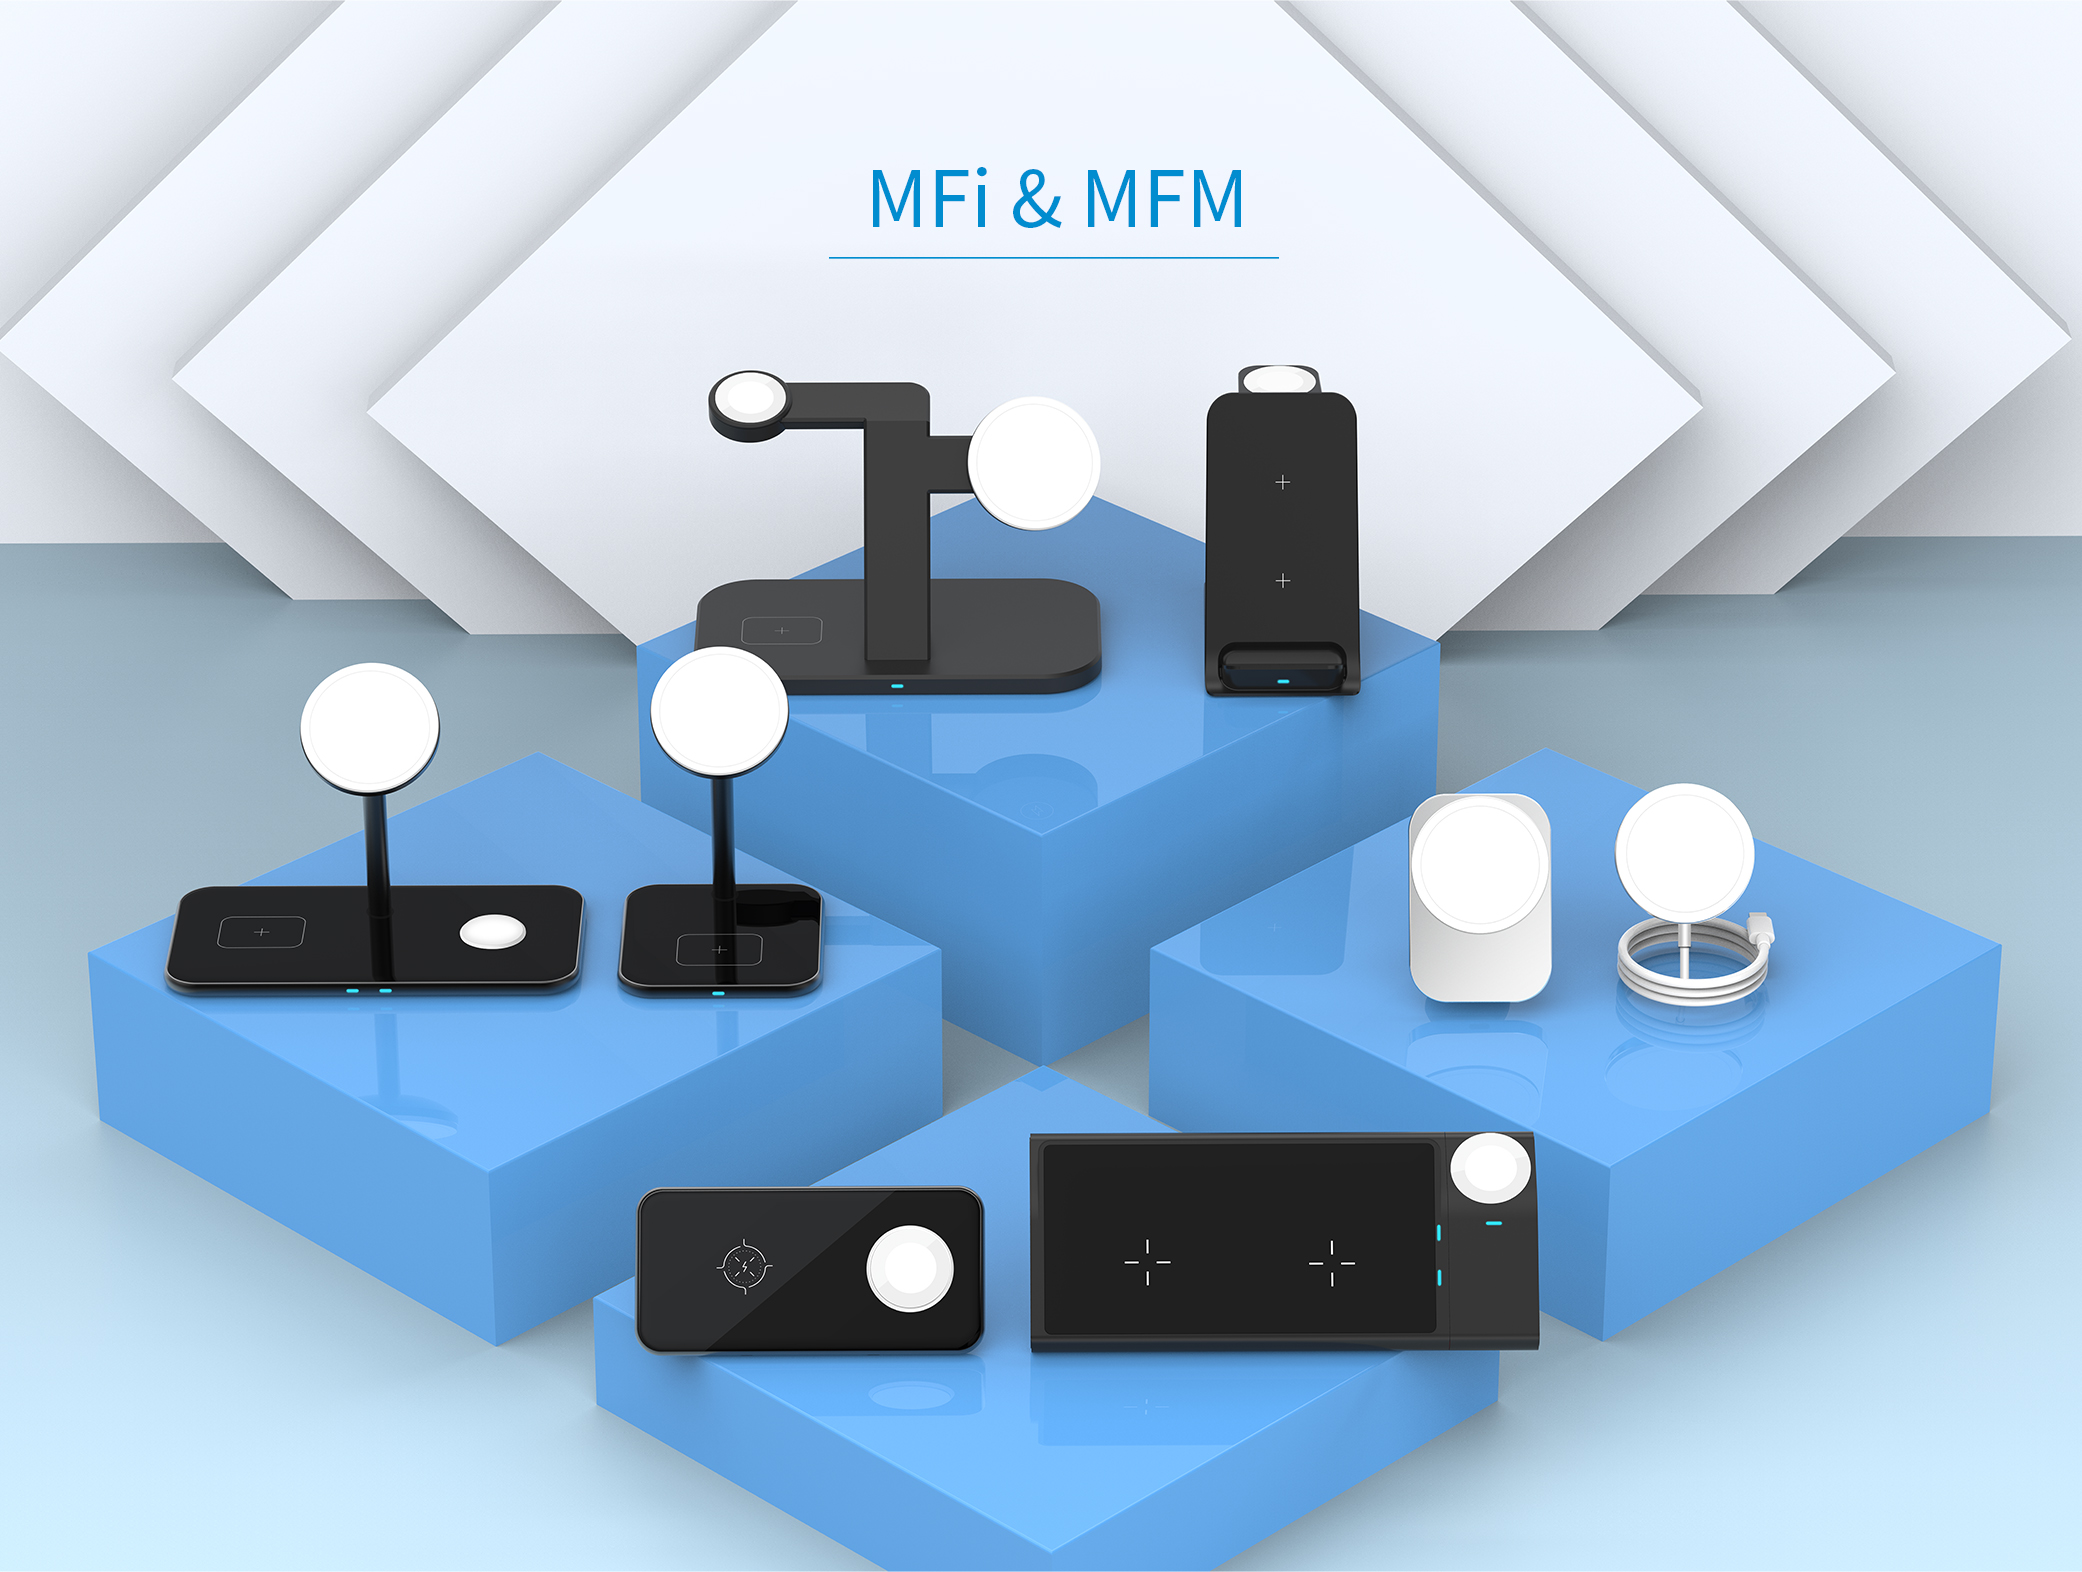 So wählen Sie das kabellose MFi-Ladegerät oder das kabellose MFM-Ladegerät aus？